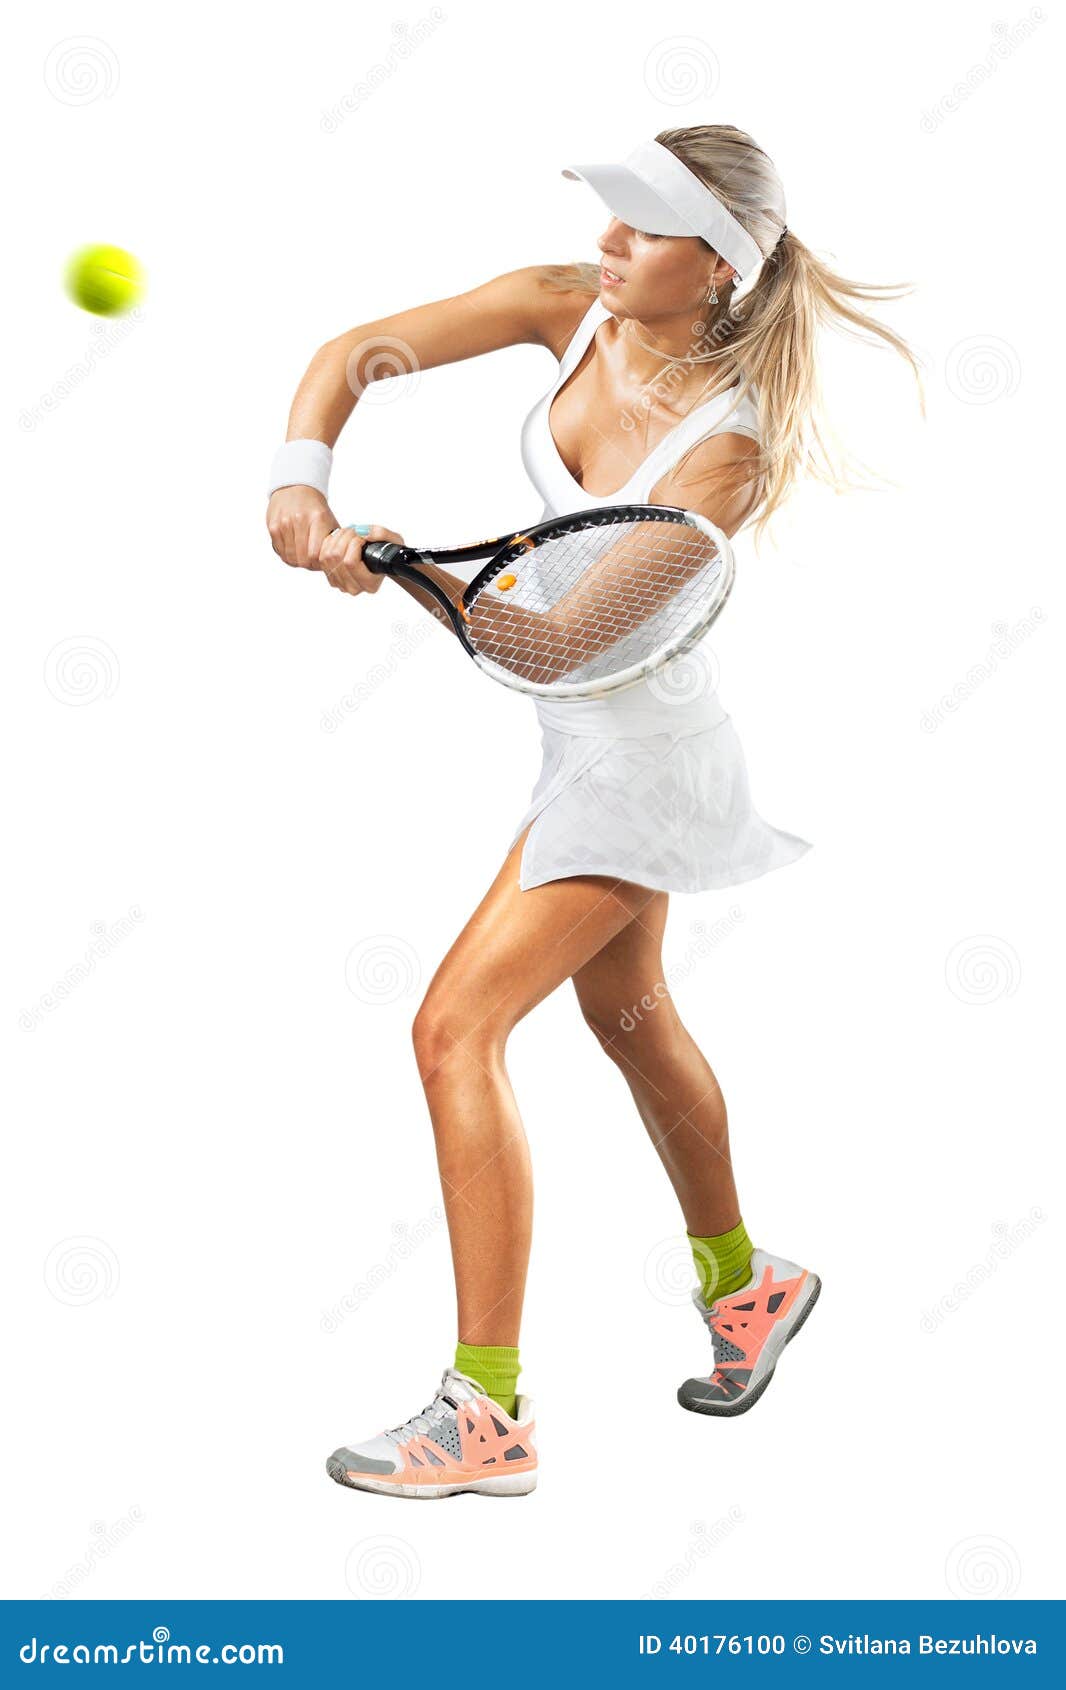 ropa para jugar tenis mujer